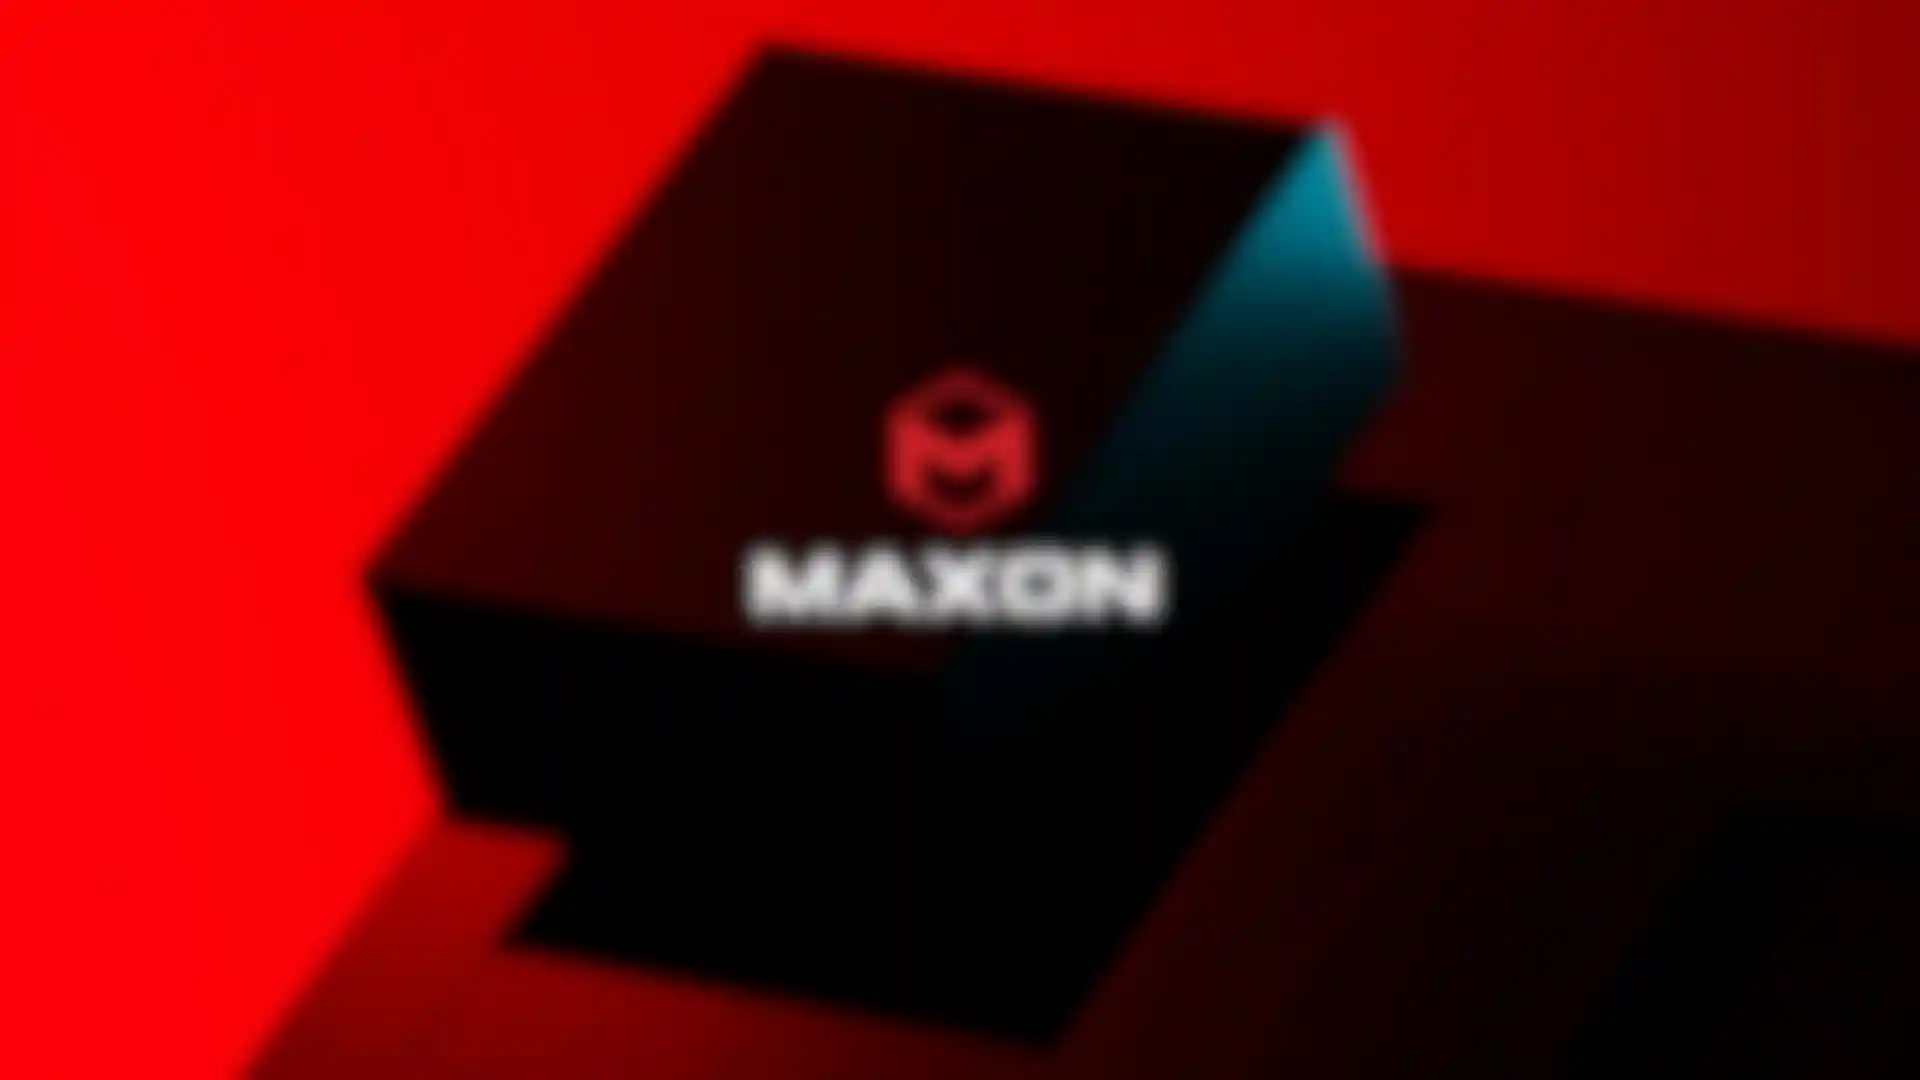 Maxon dévoile une nouvelle identité d'entreprise image